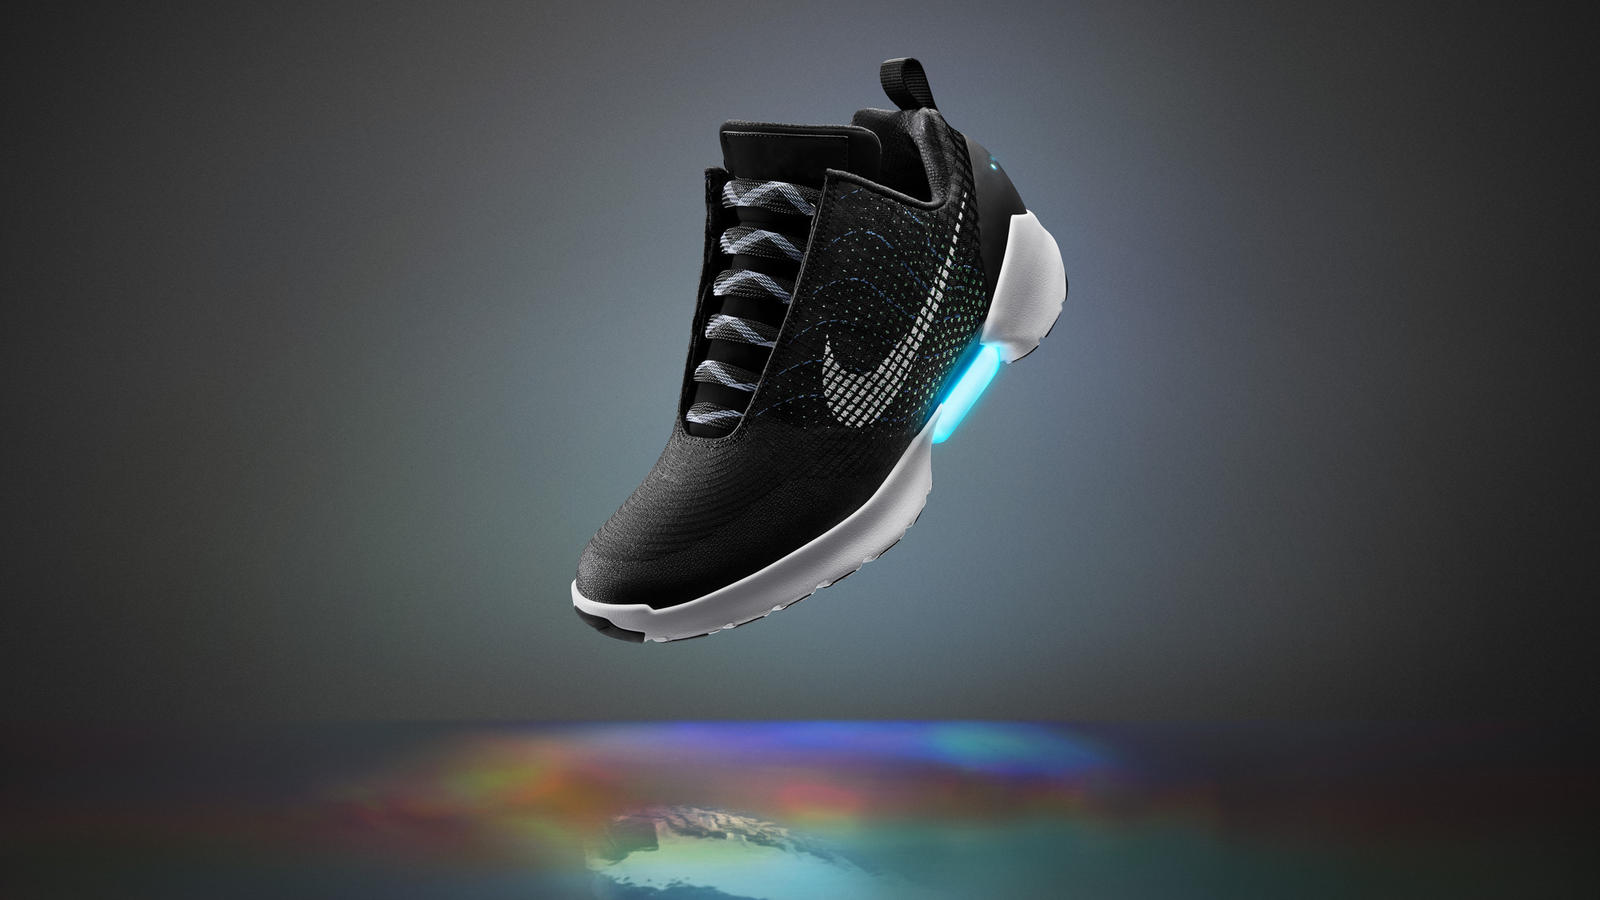 Nike'dan uygun fiyatlı bağcık bağlayan ayakkabı